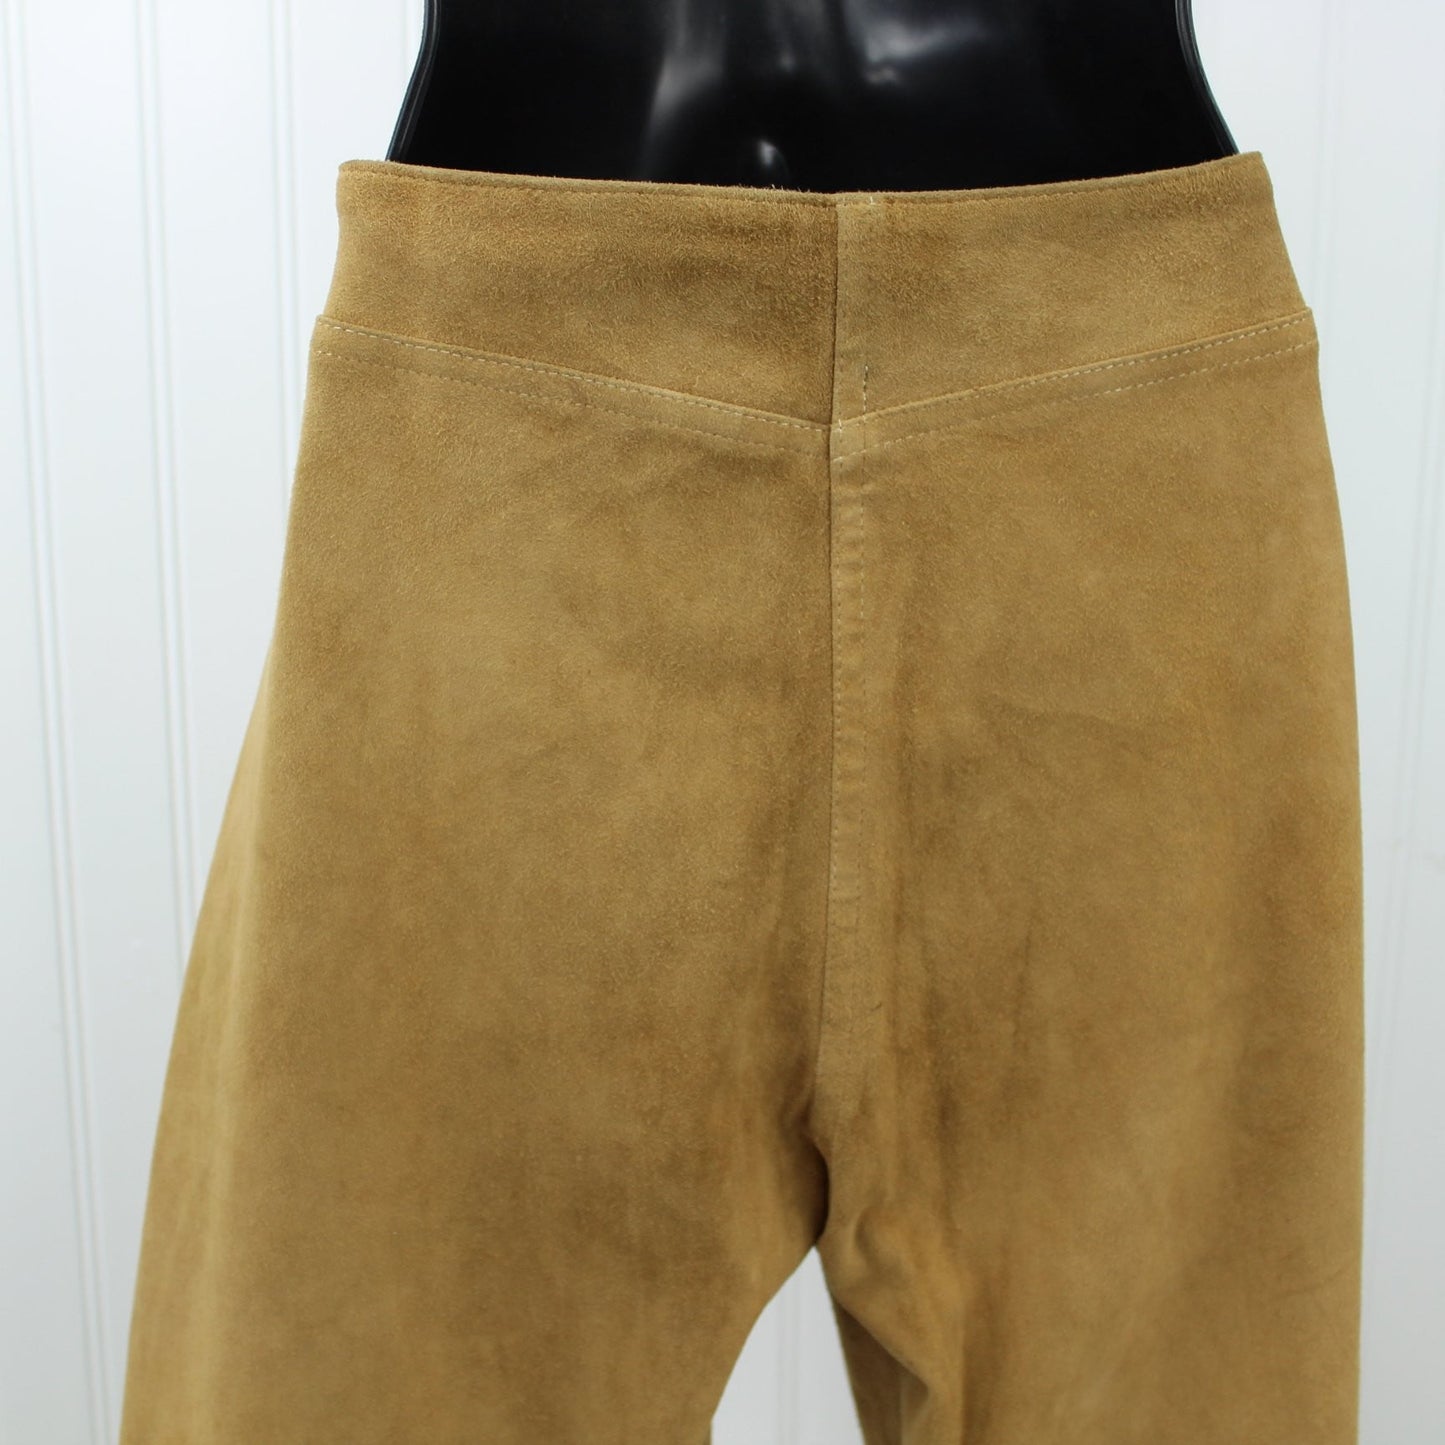 Jean Claude Jitrois France Vintage Womens Suede Leather Pants - Flare Leg Chevre Velour Size 40  - 32" Waist great cut set in waist back